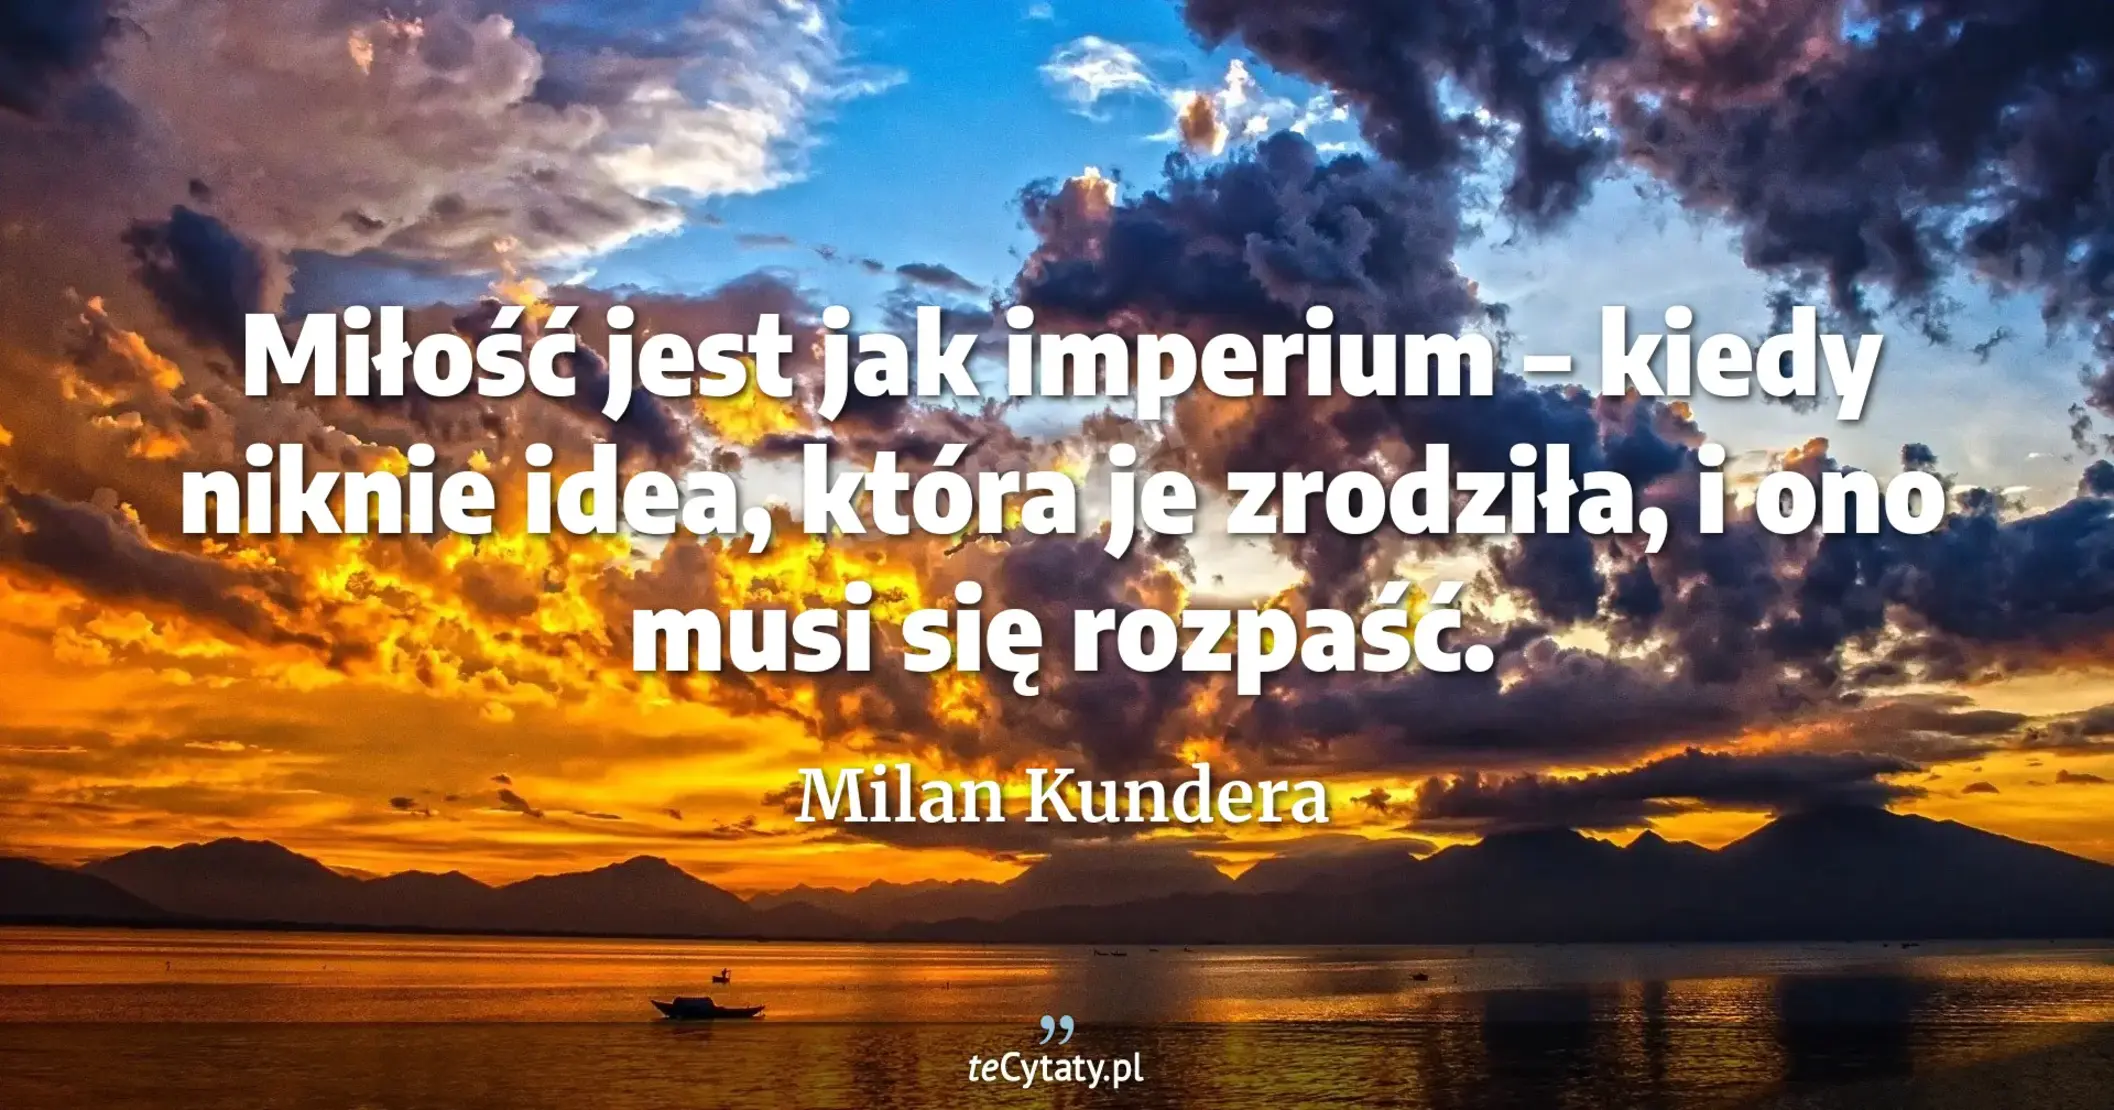 Miłość jest jak imperium – kiedy niknie idea, która je zrodziła, i ono musi się rozpaść. - Milan Kundera